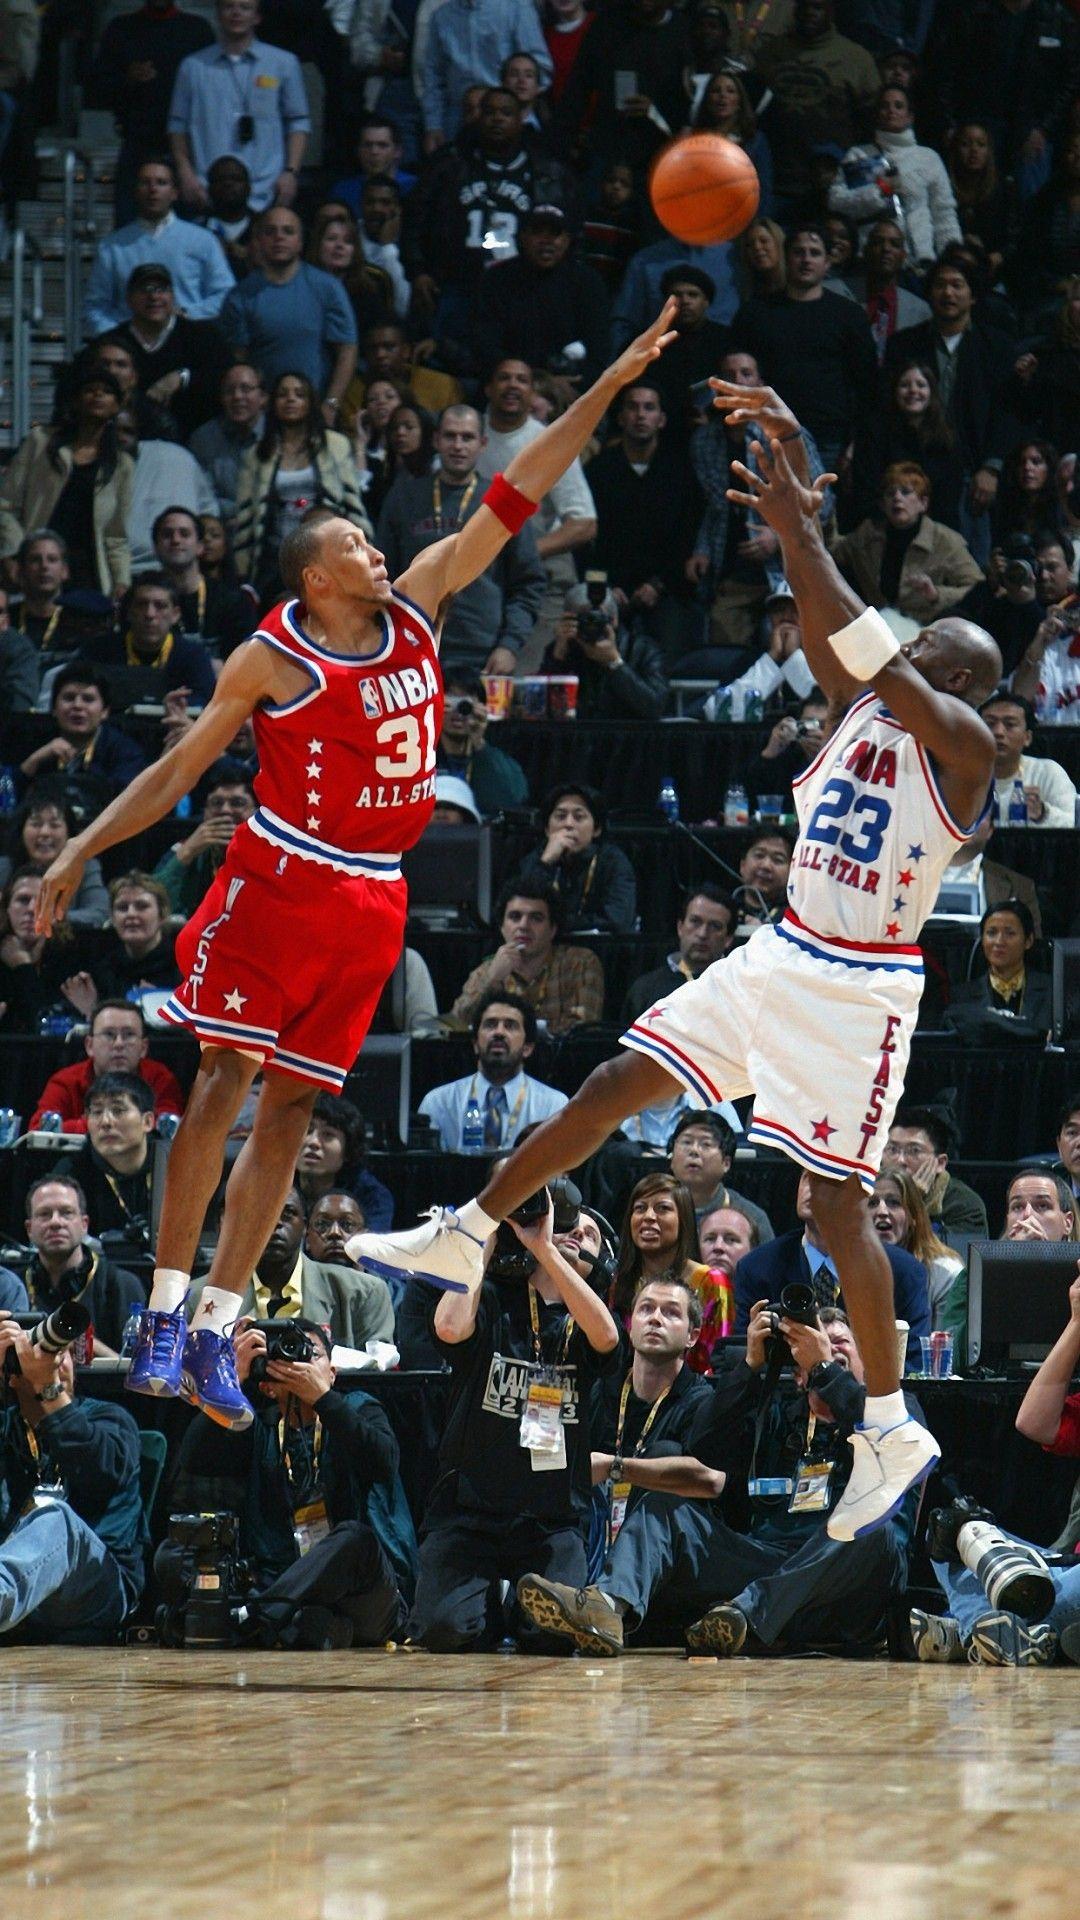 Kobe vs Jordan Wallpaper HD